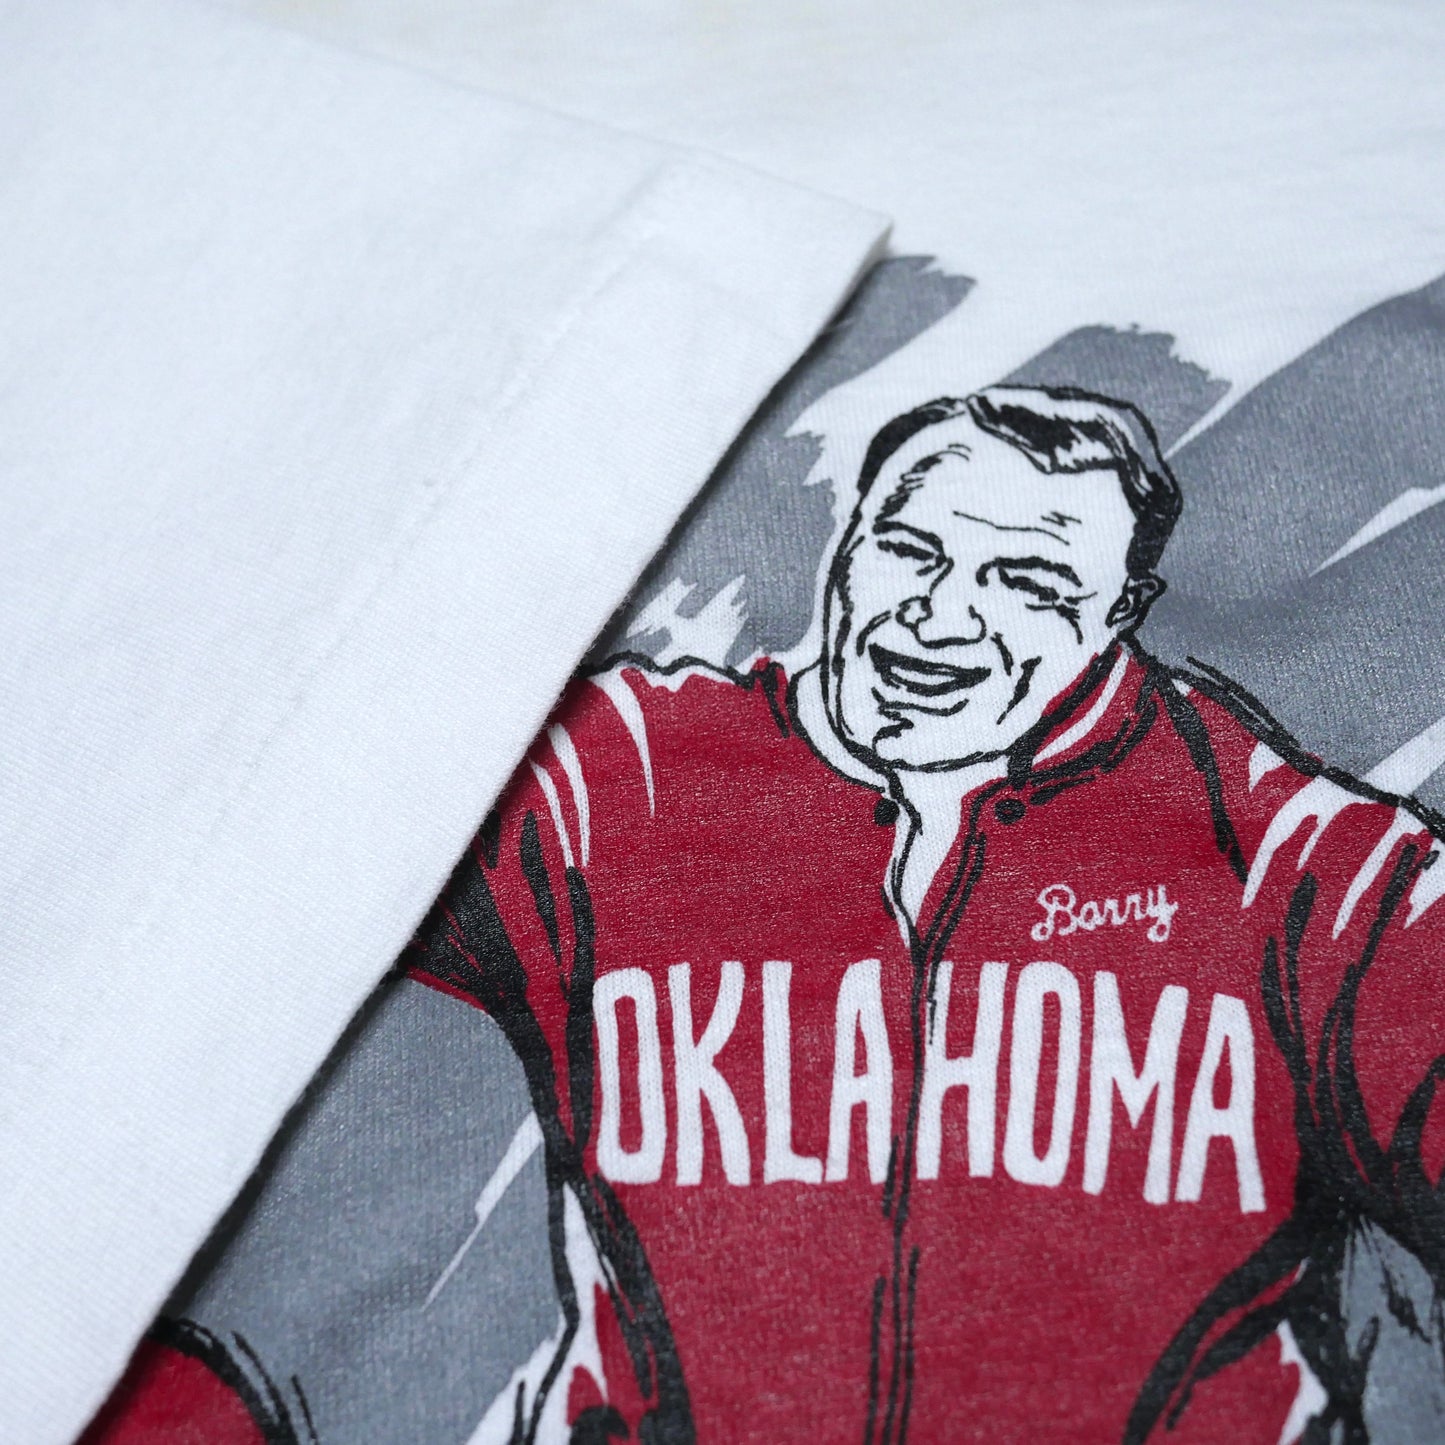 Oklahoma Sooners Farewell Barry Shirt - XXL